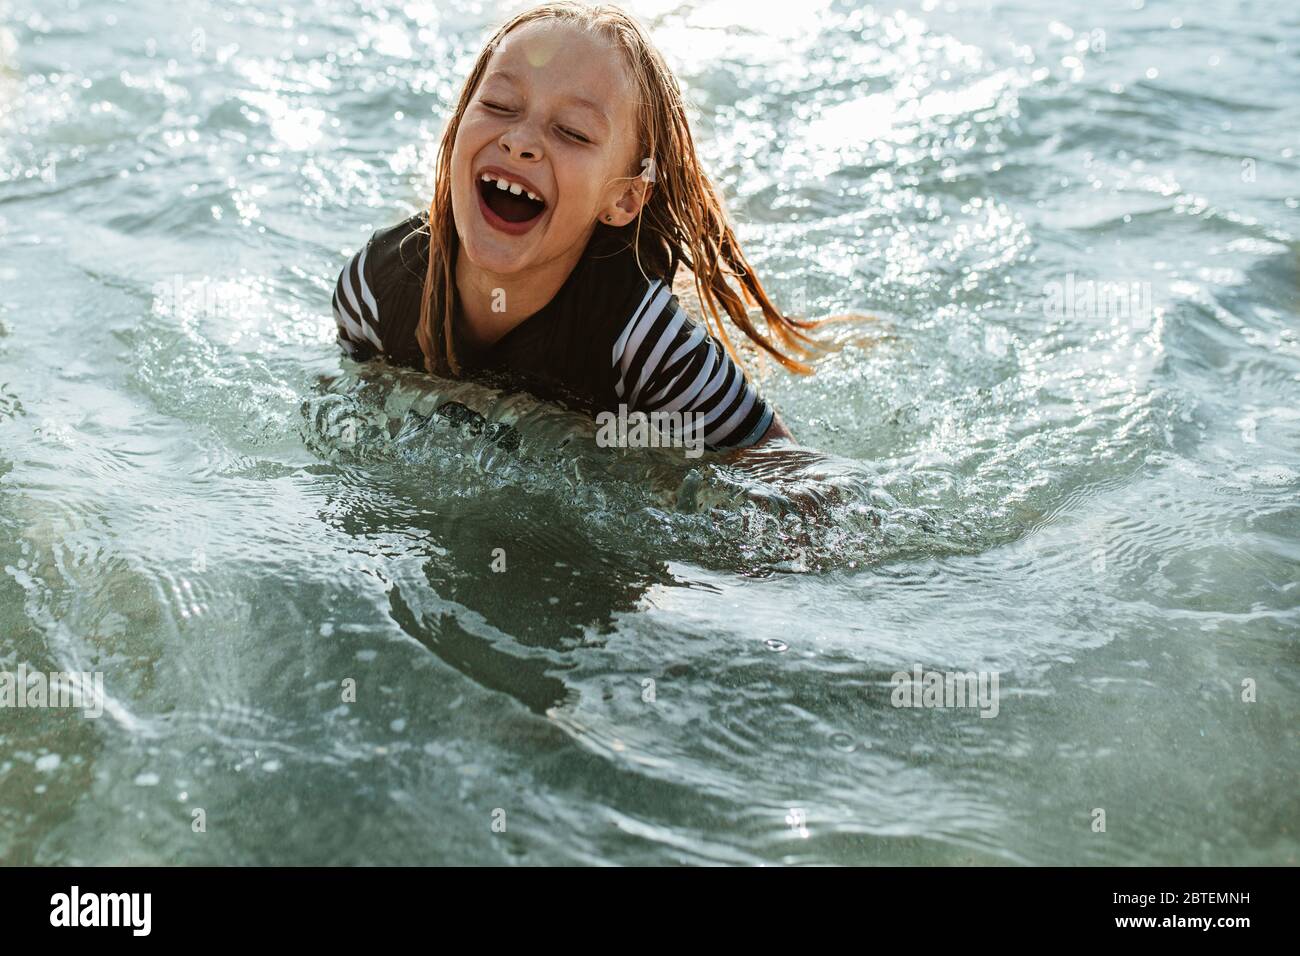 Aufgeregt Mädchen genießen Schwimmen im Meerwasser. Junges Mädchen sitzt im Meerwasser und lächelt. Stockfoto